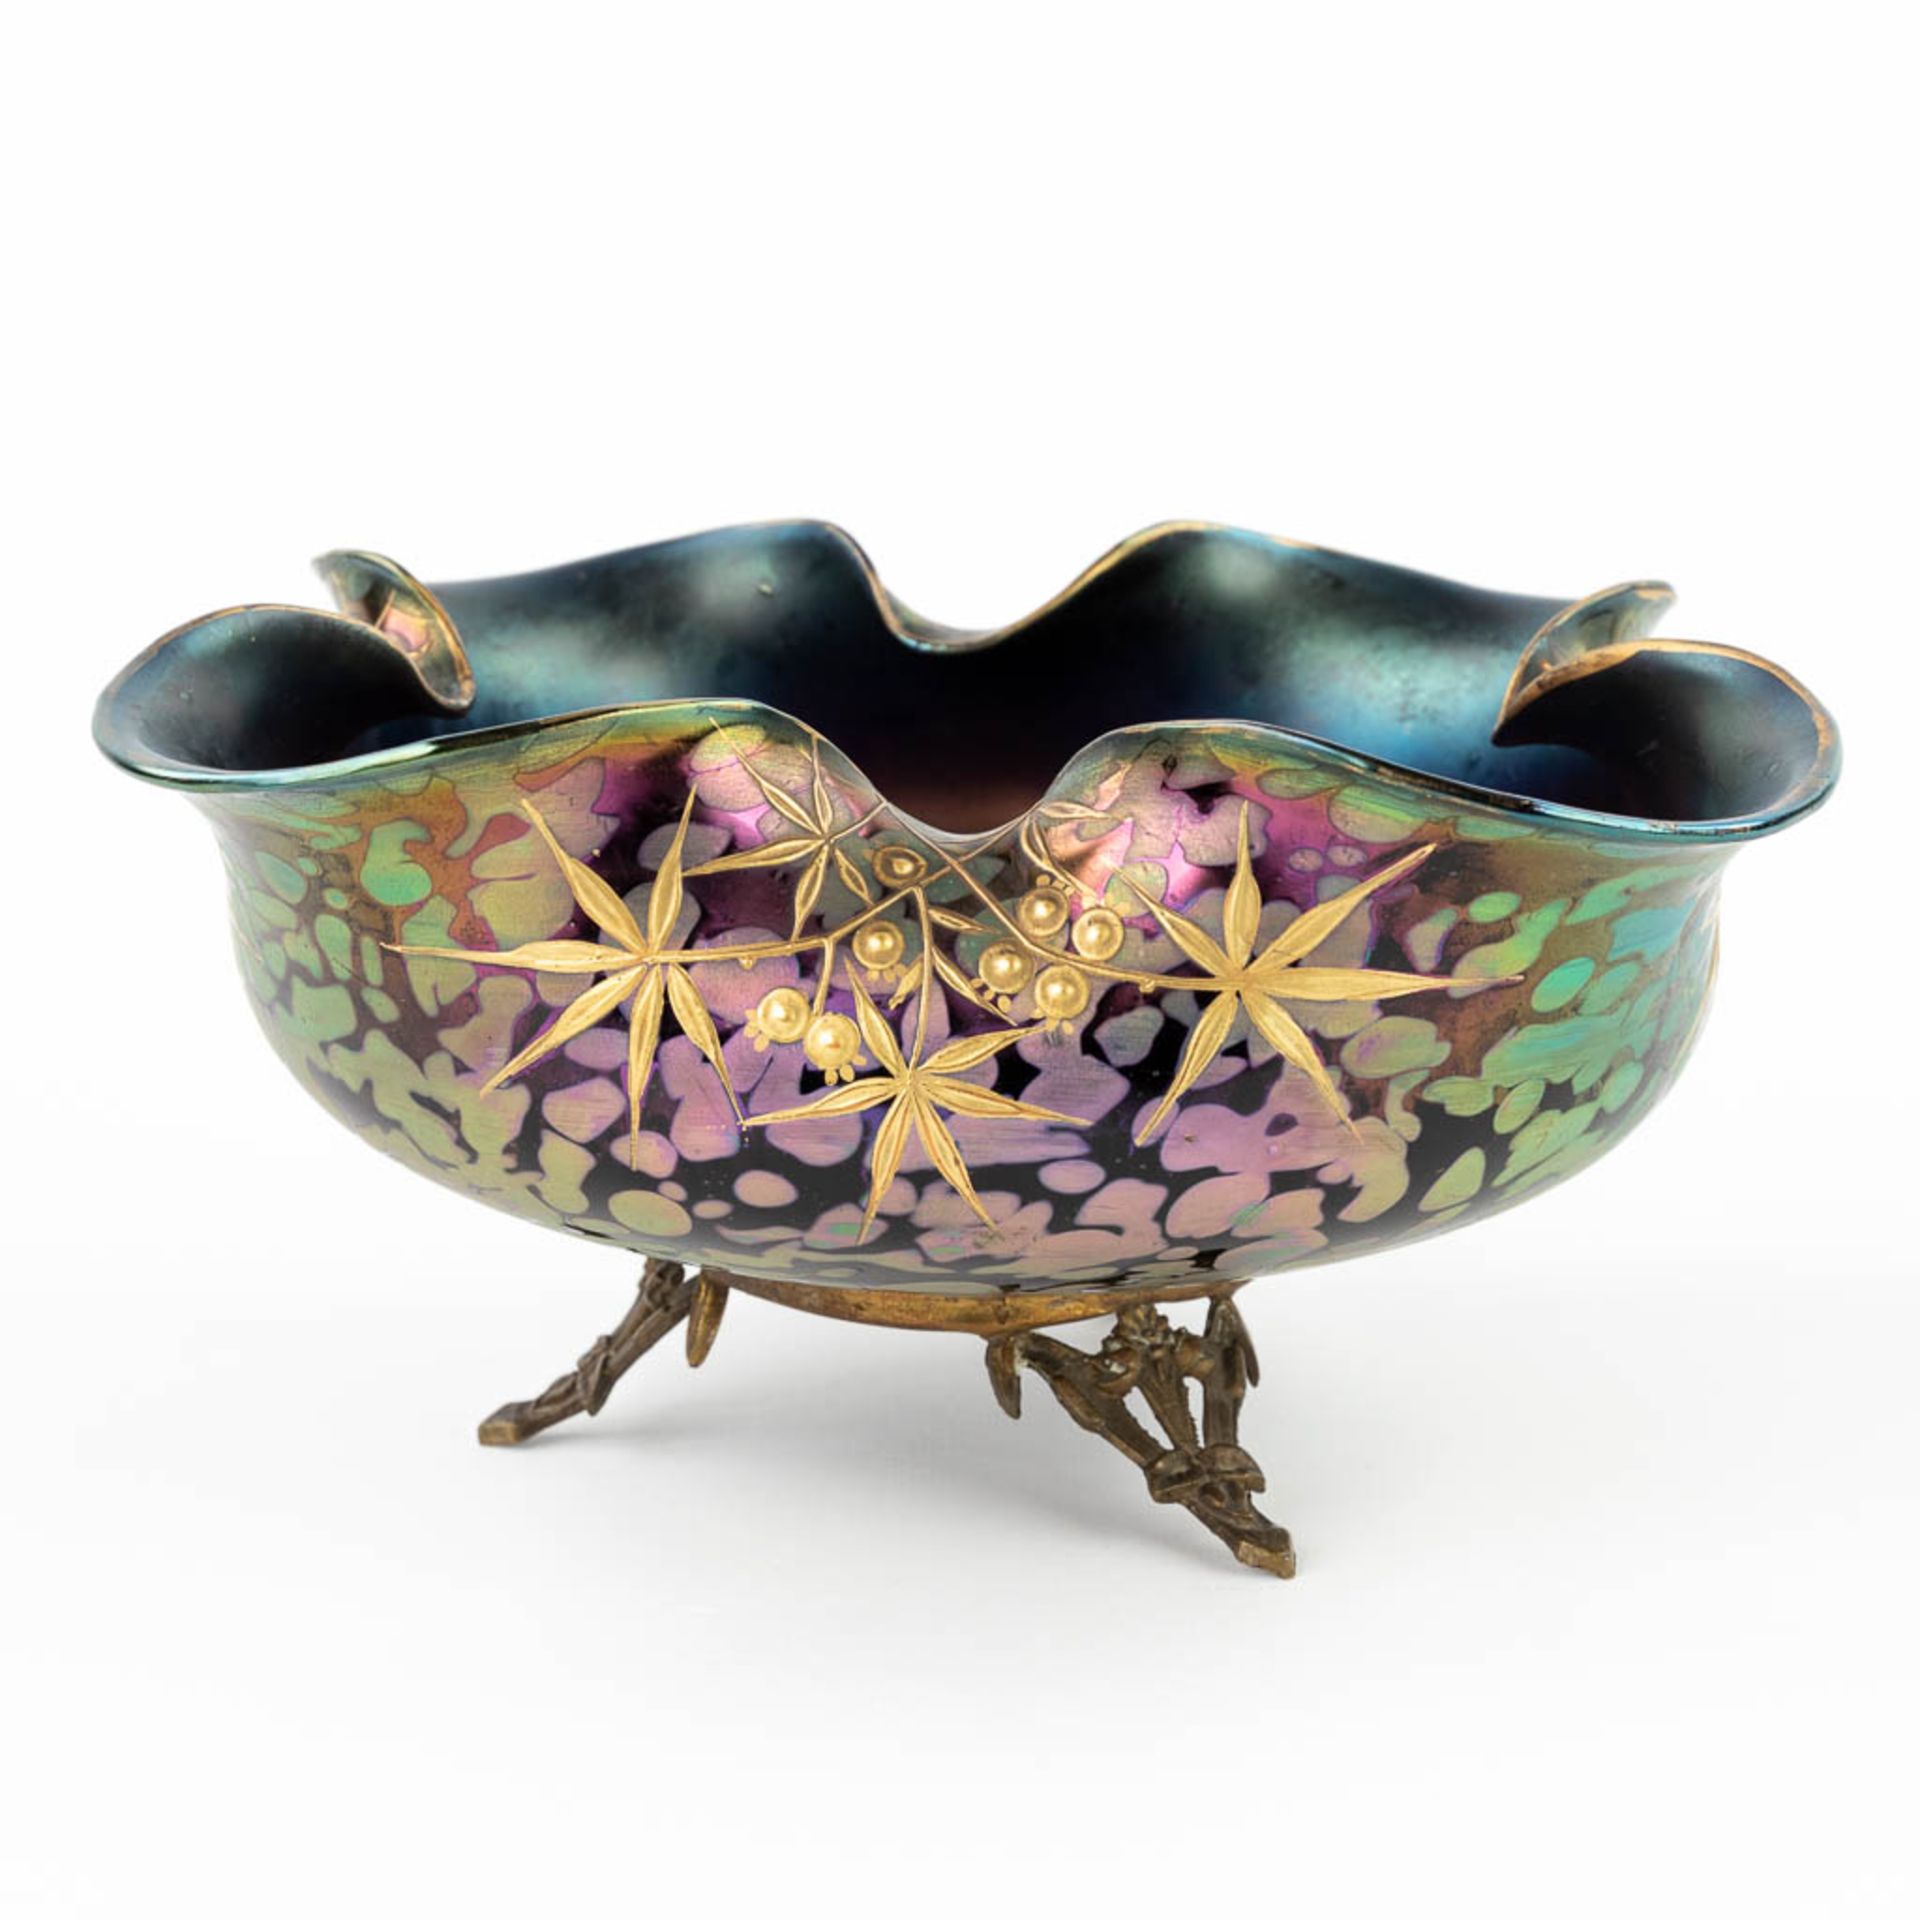 A Pâte-de-Verre glass bowl on a bronze base, Art Nouveau. (H: 12 x D: 26,5 cm) - Image 7 of 11